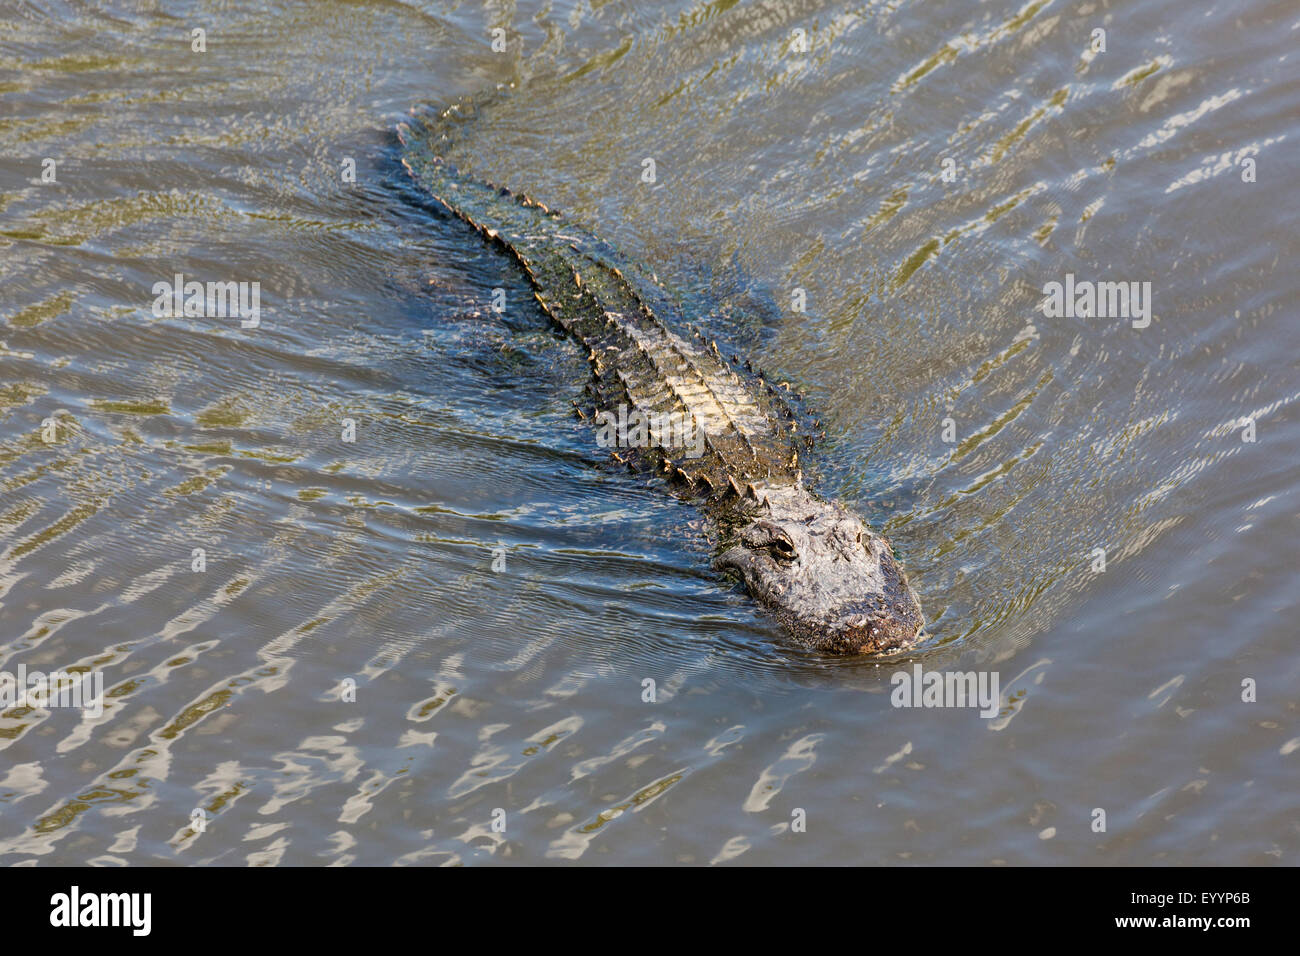 Cocodrilo Americano (Alligator mississippiensis), de tres metros de largo, natación, Kissimmee, Florida, EE.UU. Foto de stock